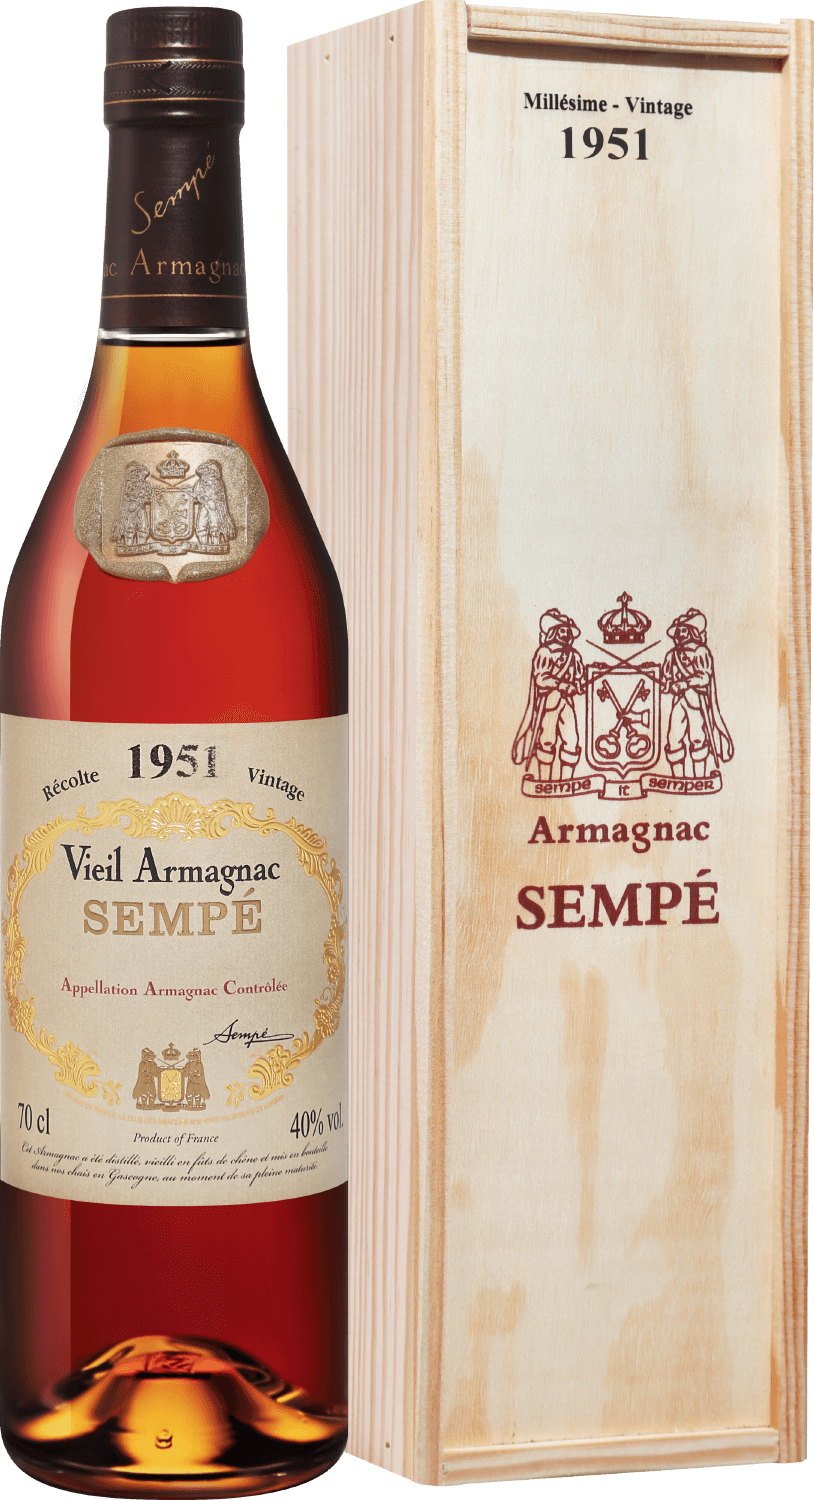 Sempe Vieil Armagnac 1951, gift box